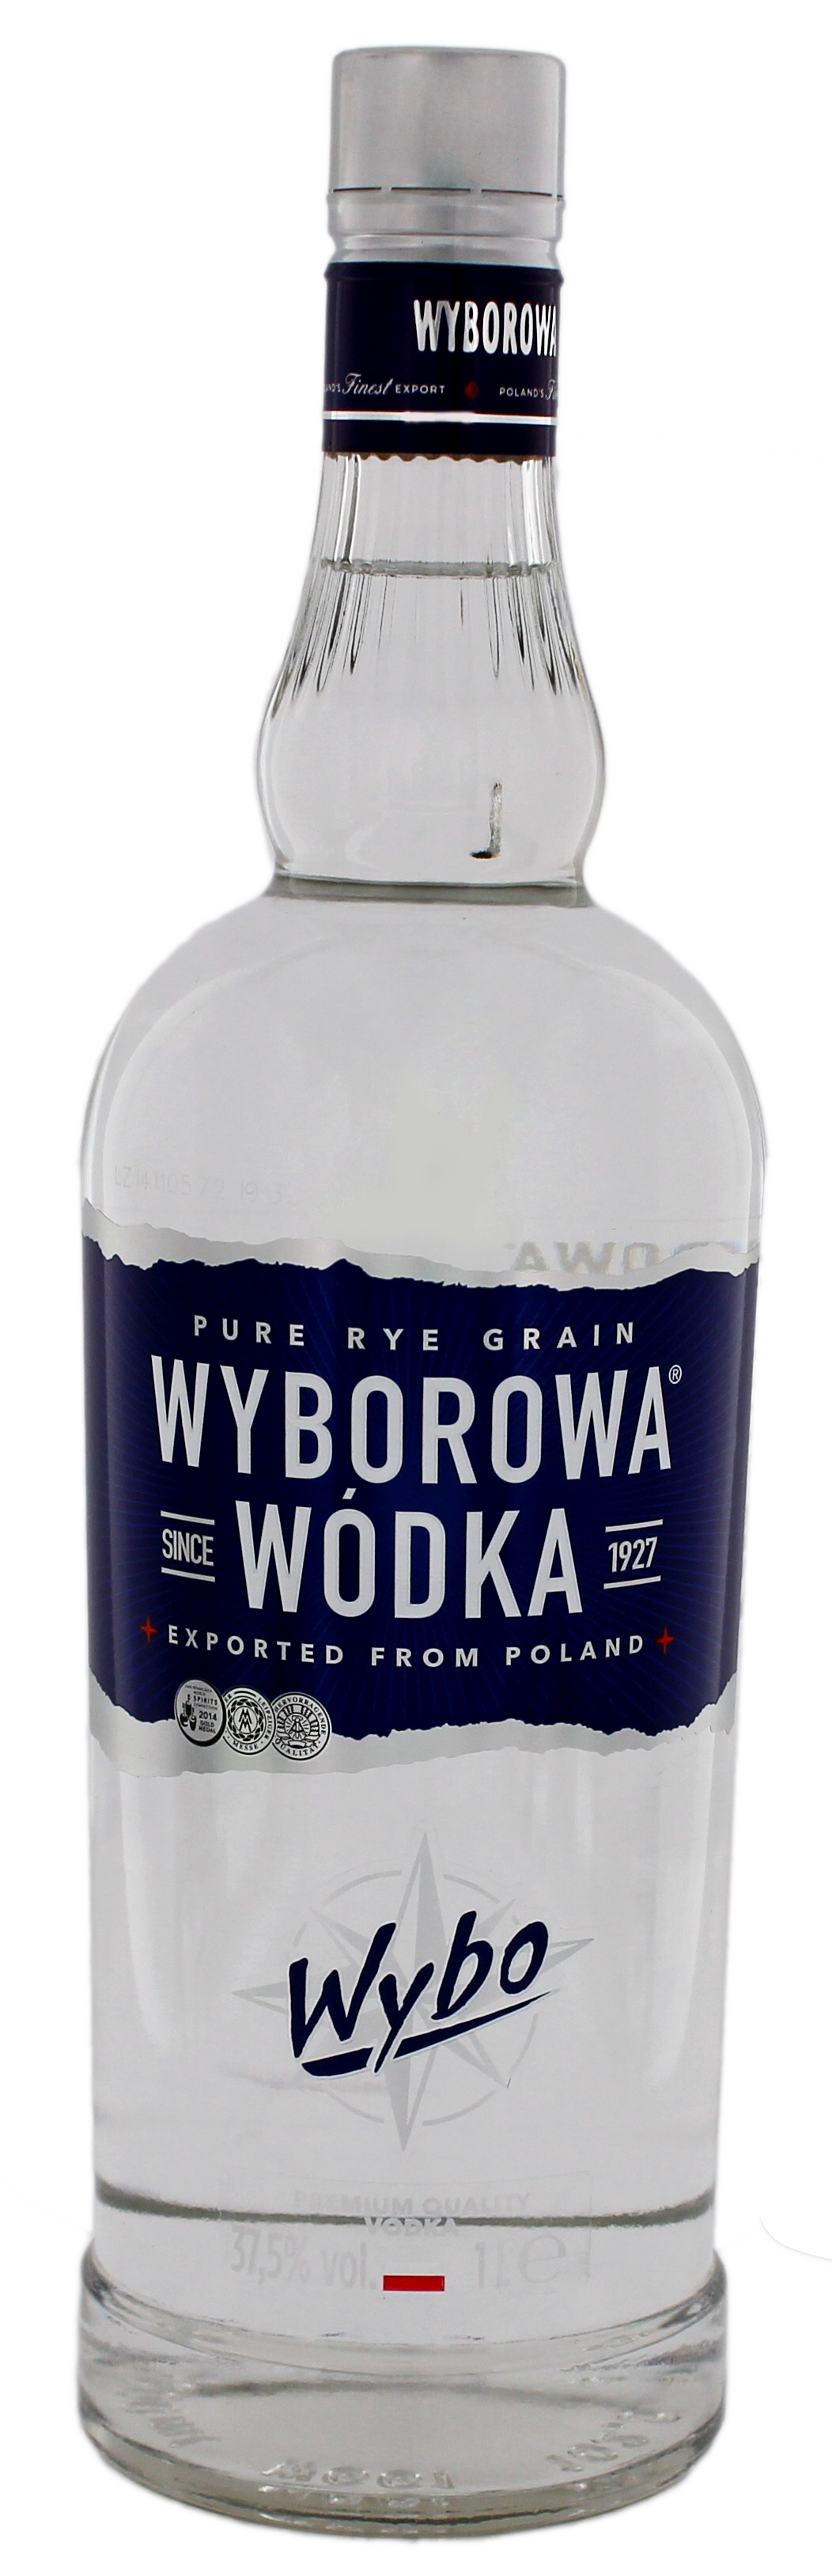 Wyborowa Vodka jetzt kaufen! Wodka Online Shop - Spirituosen günstig